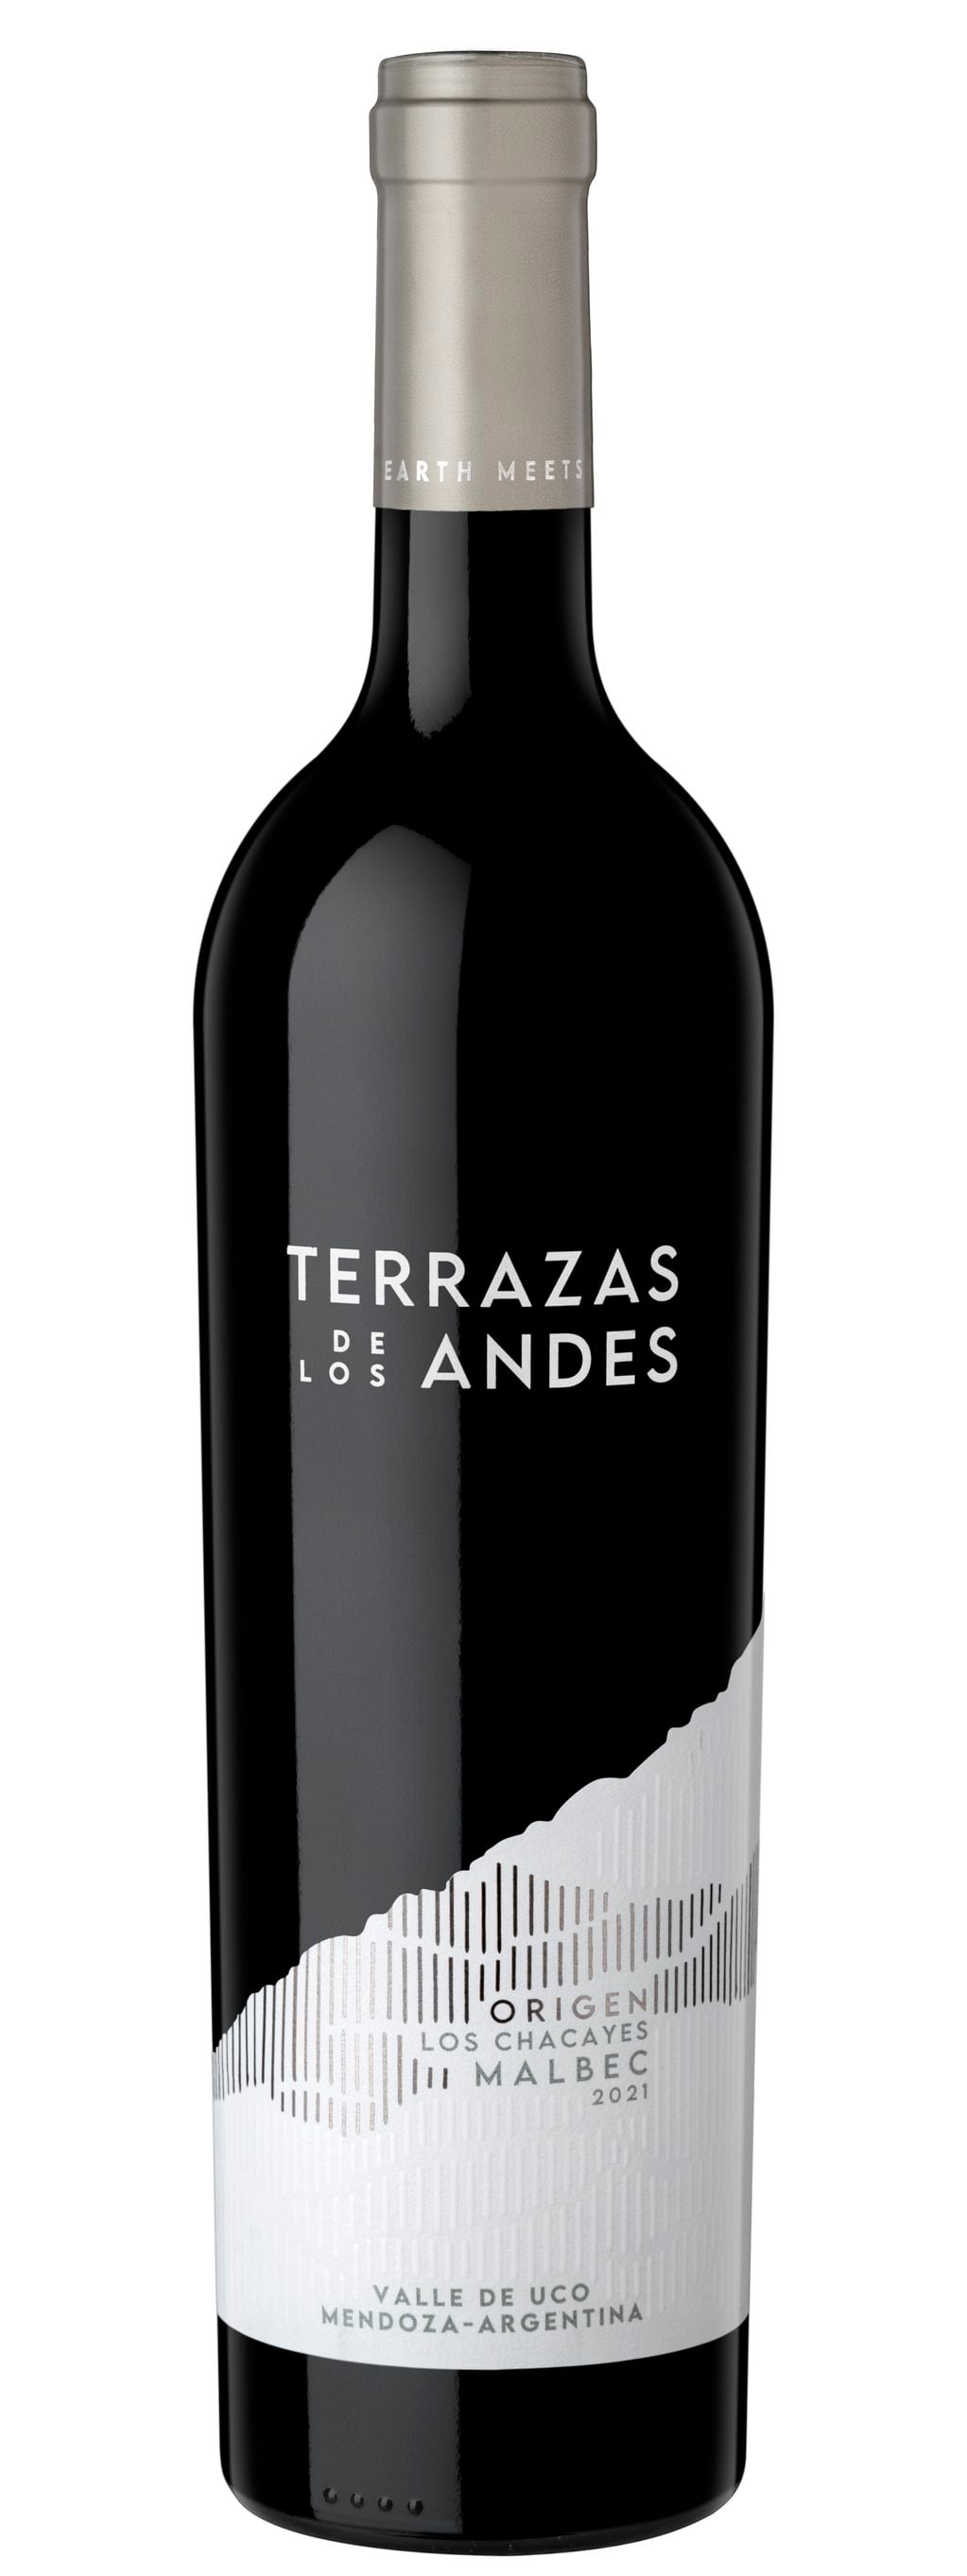 Terrazas de Los Andes Origen Los Chacayes Malbec 2021es uno de los mejores 50 vinos del mundo para Decanter. - Gentileza